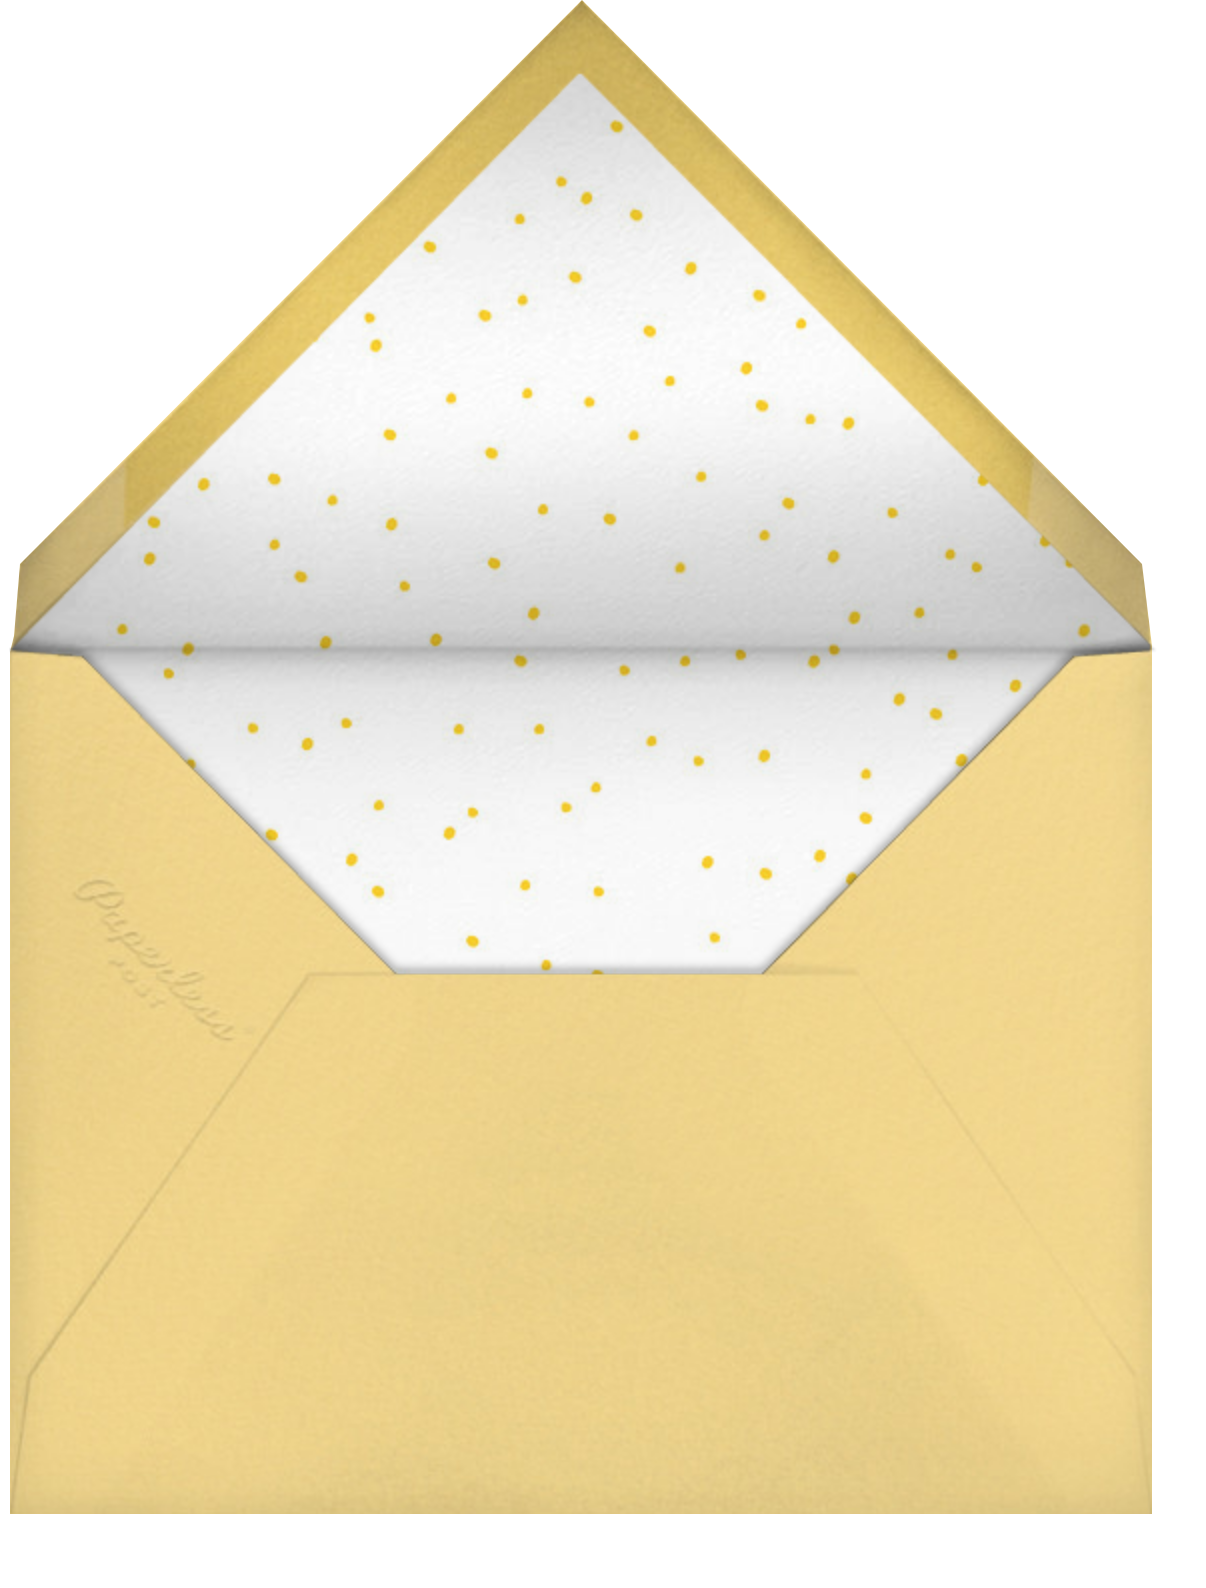 City Mouse - Little Cube - Envelope